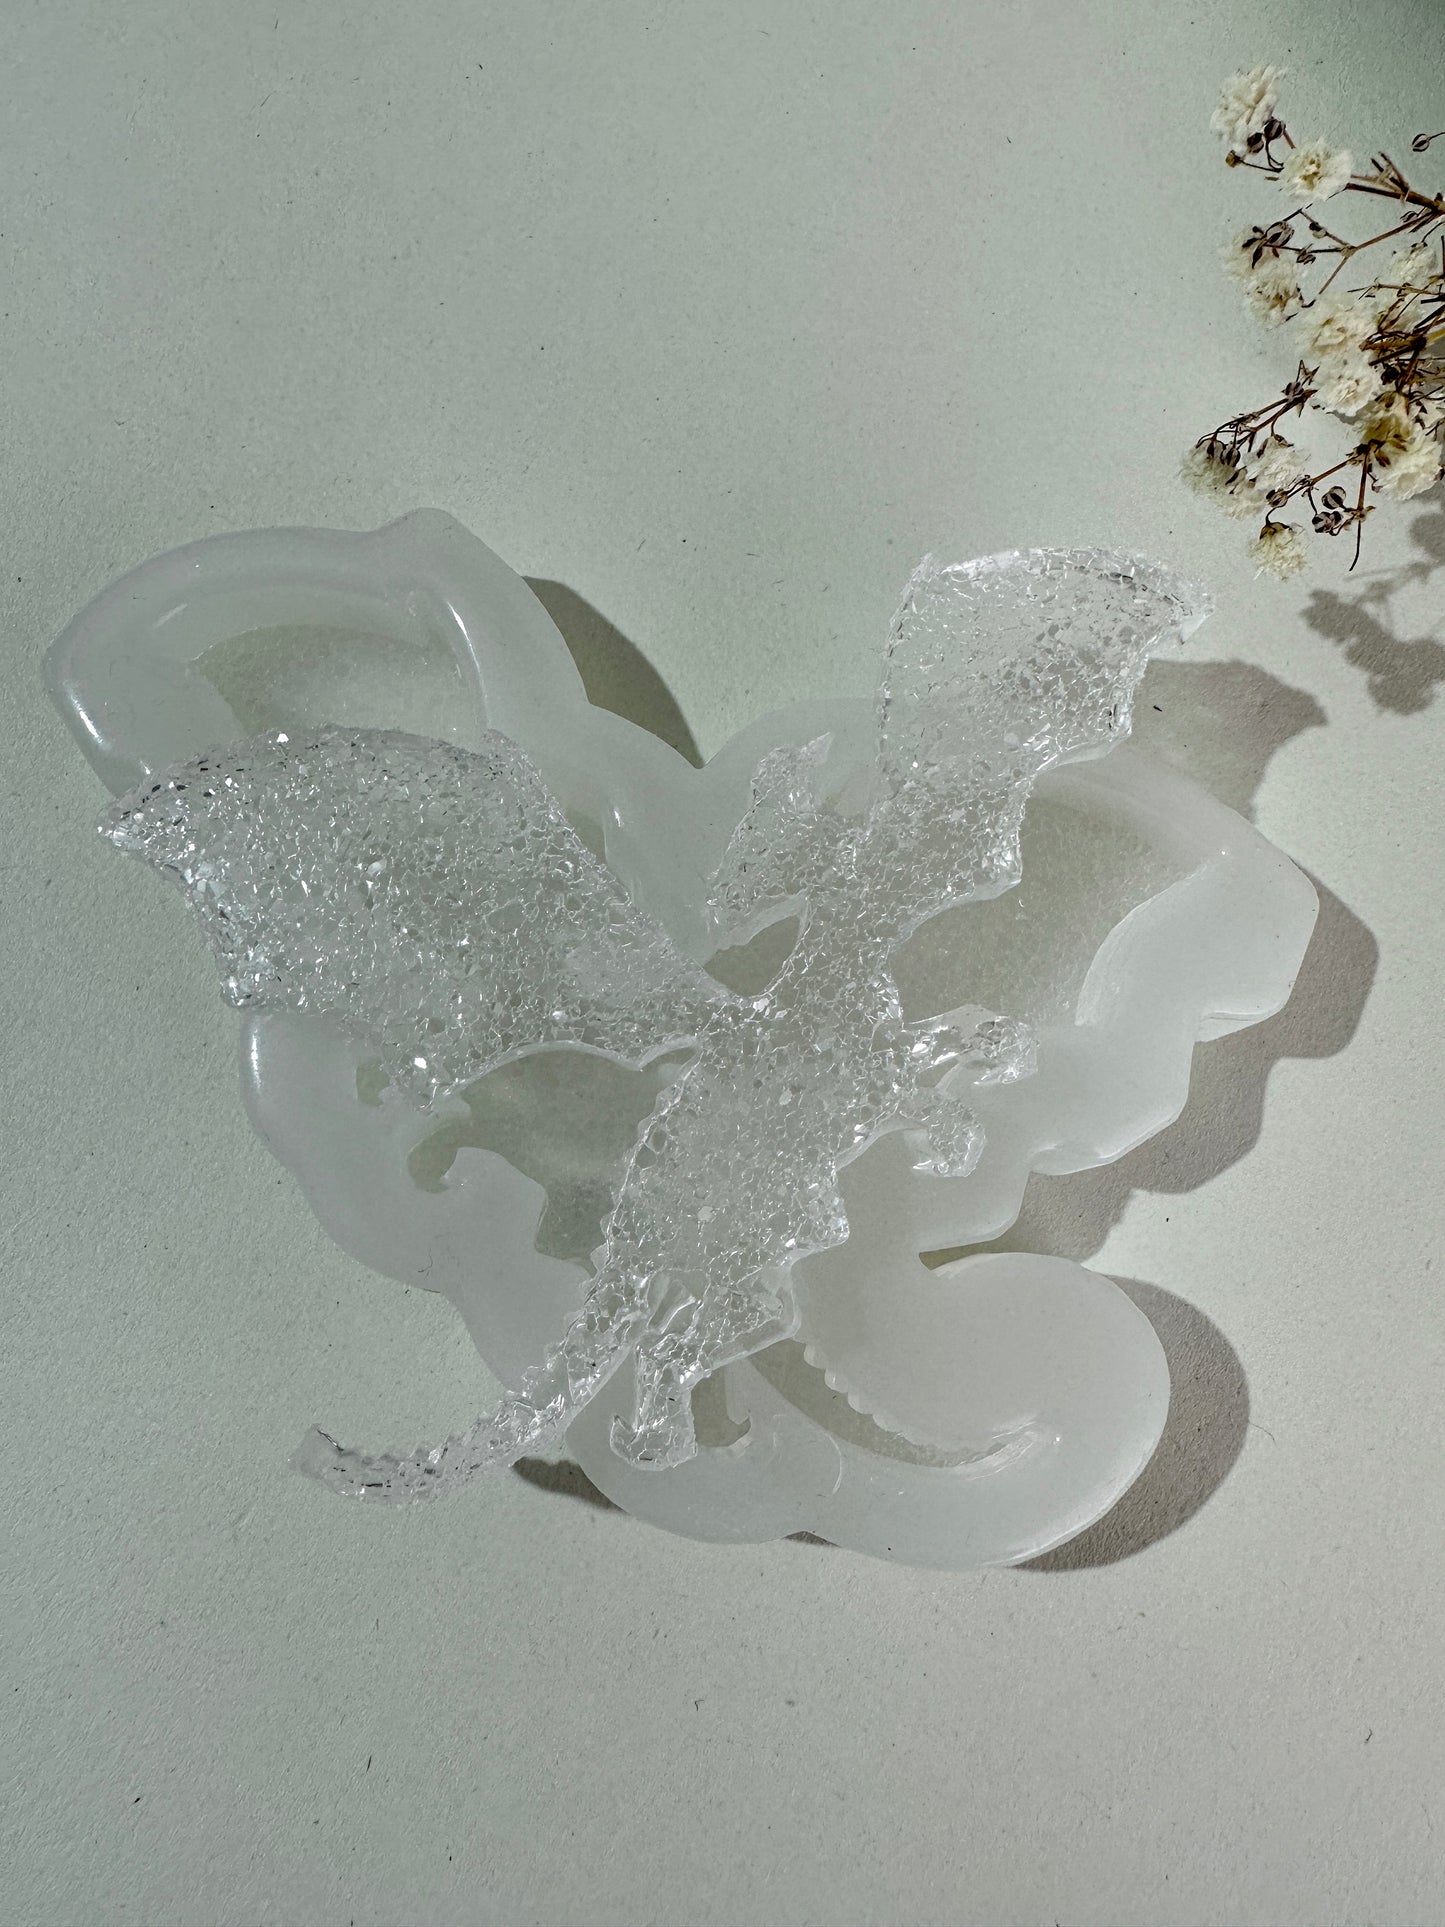 Kristalldrache-Silikonform für Kunstharz, einzigartiger Weihnachtsbaum-Spielzeughersteller, perfektes Weihnachtsgeschenk 